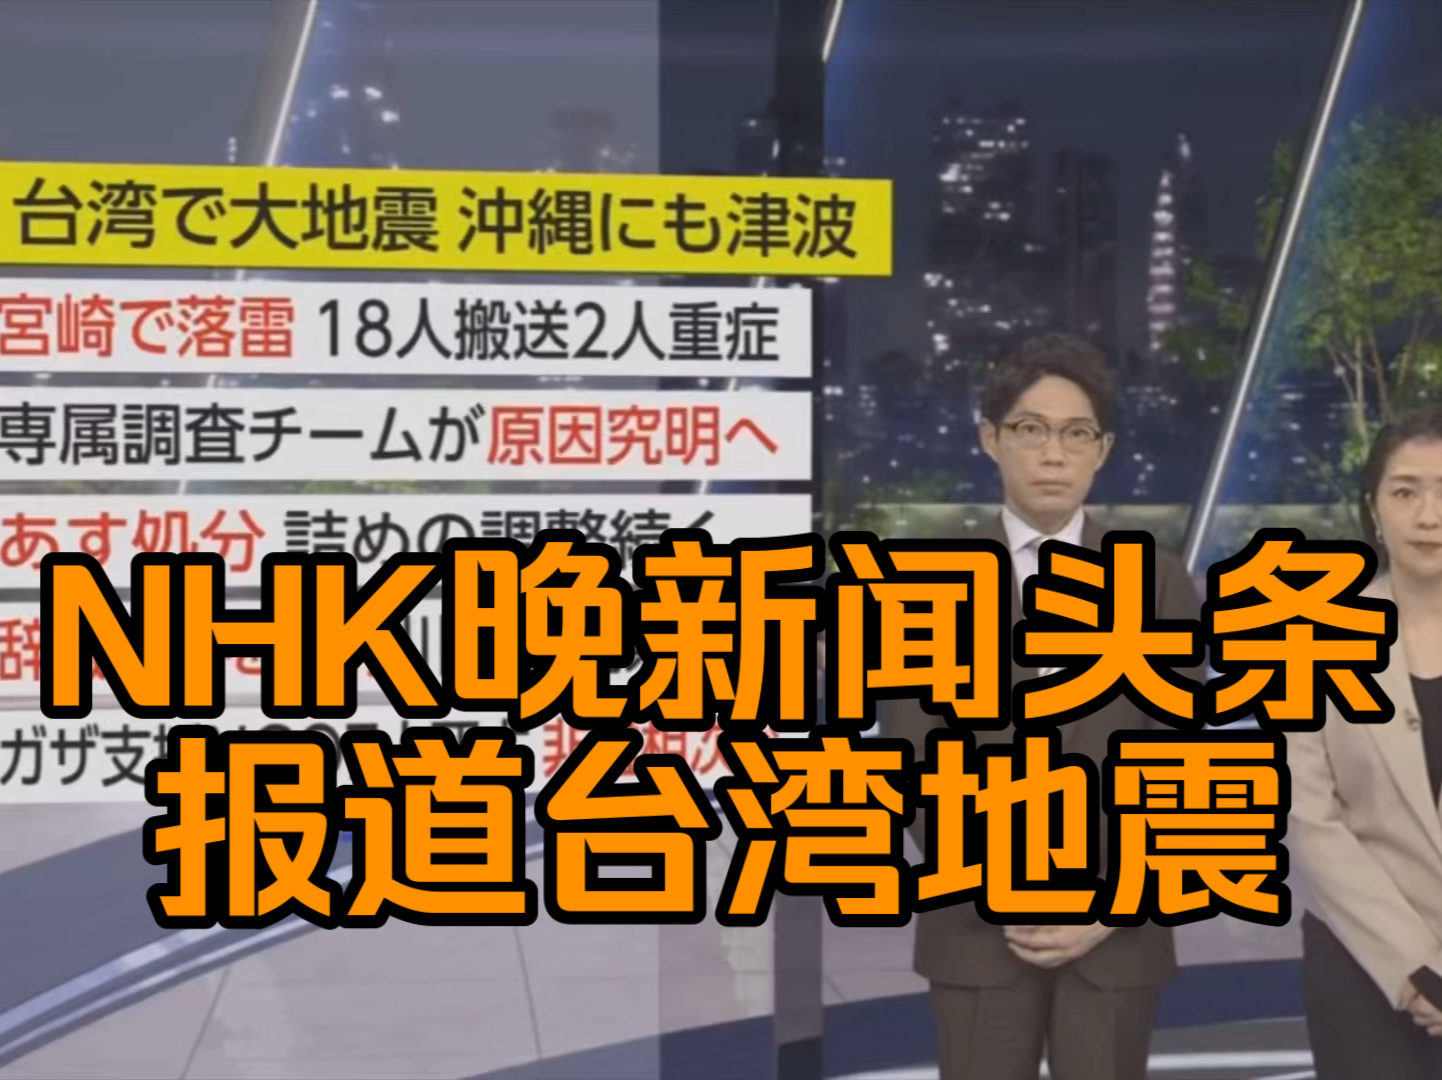 nhk晚新闻头条报道台湾花莲地震